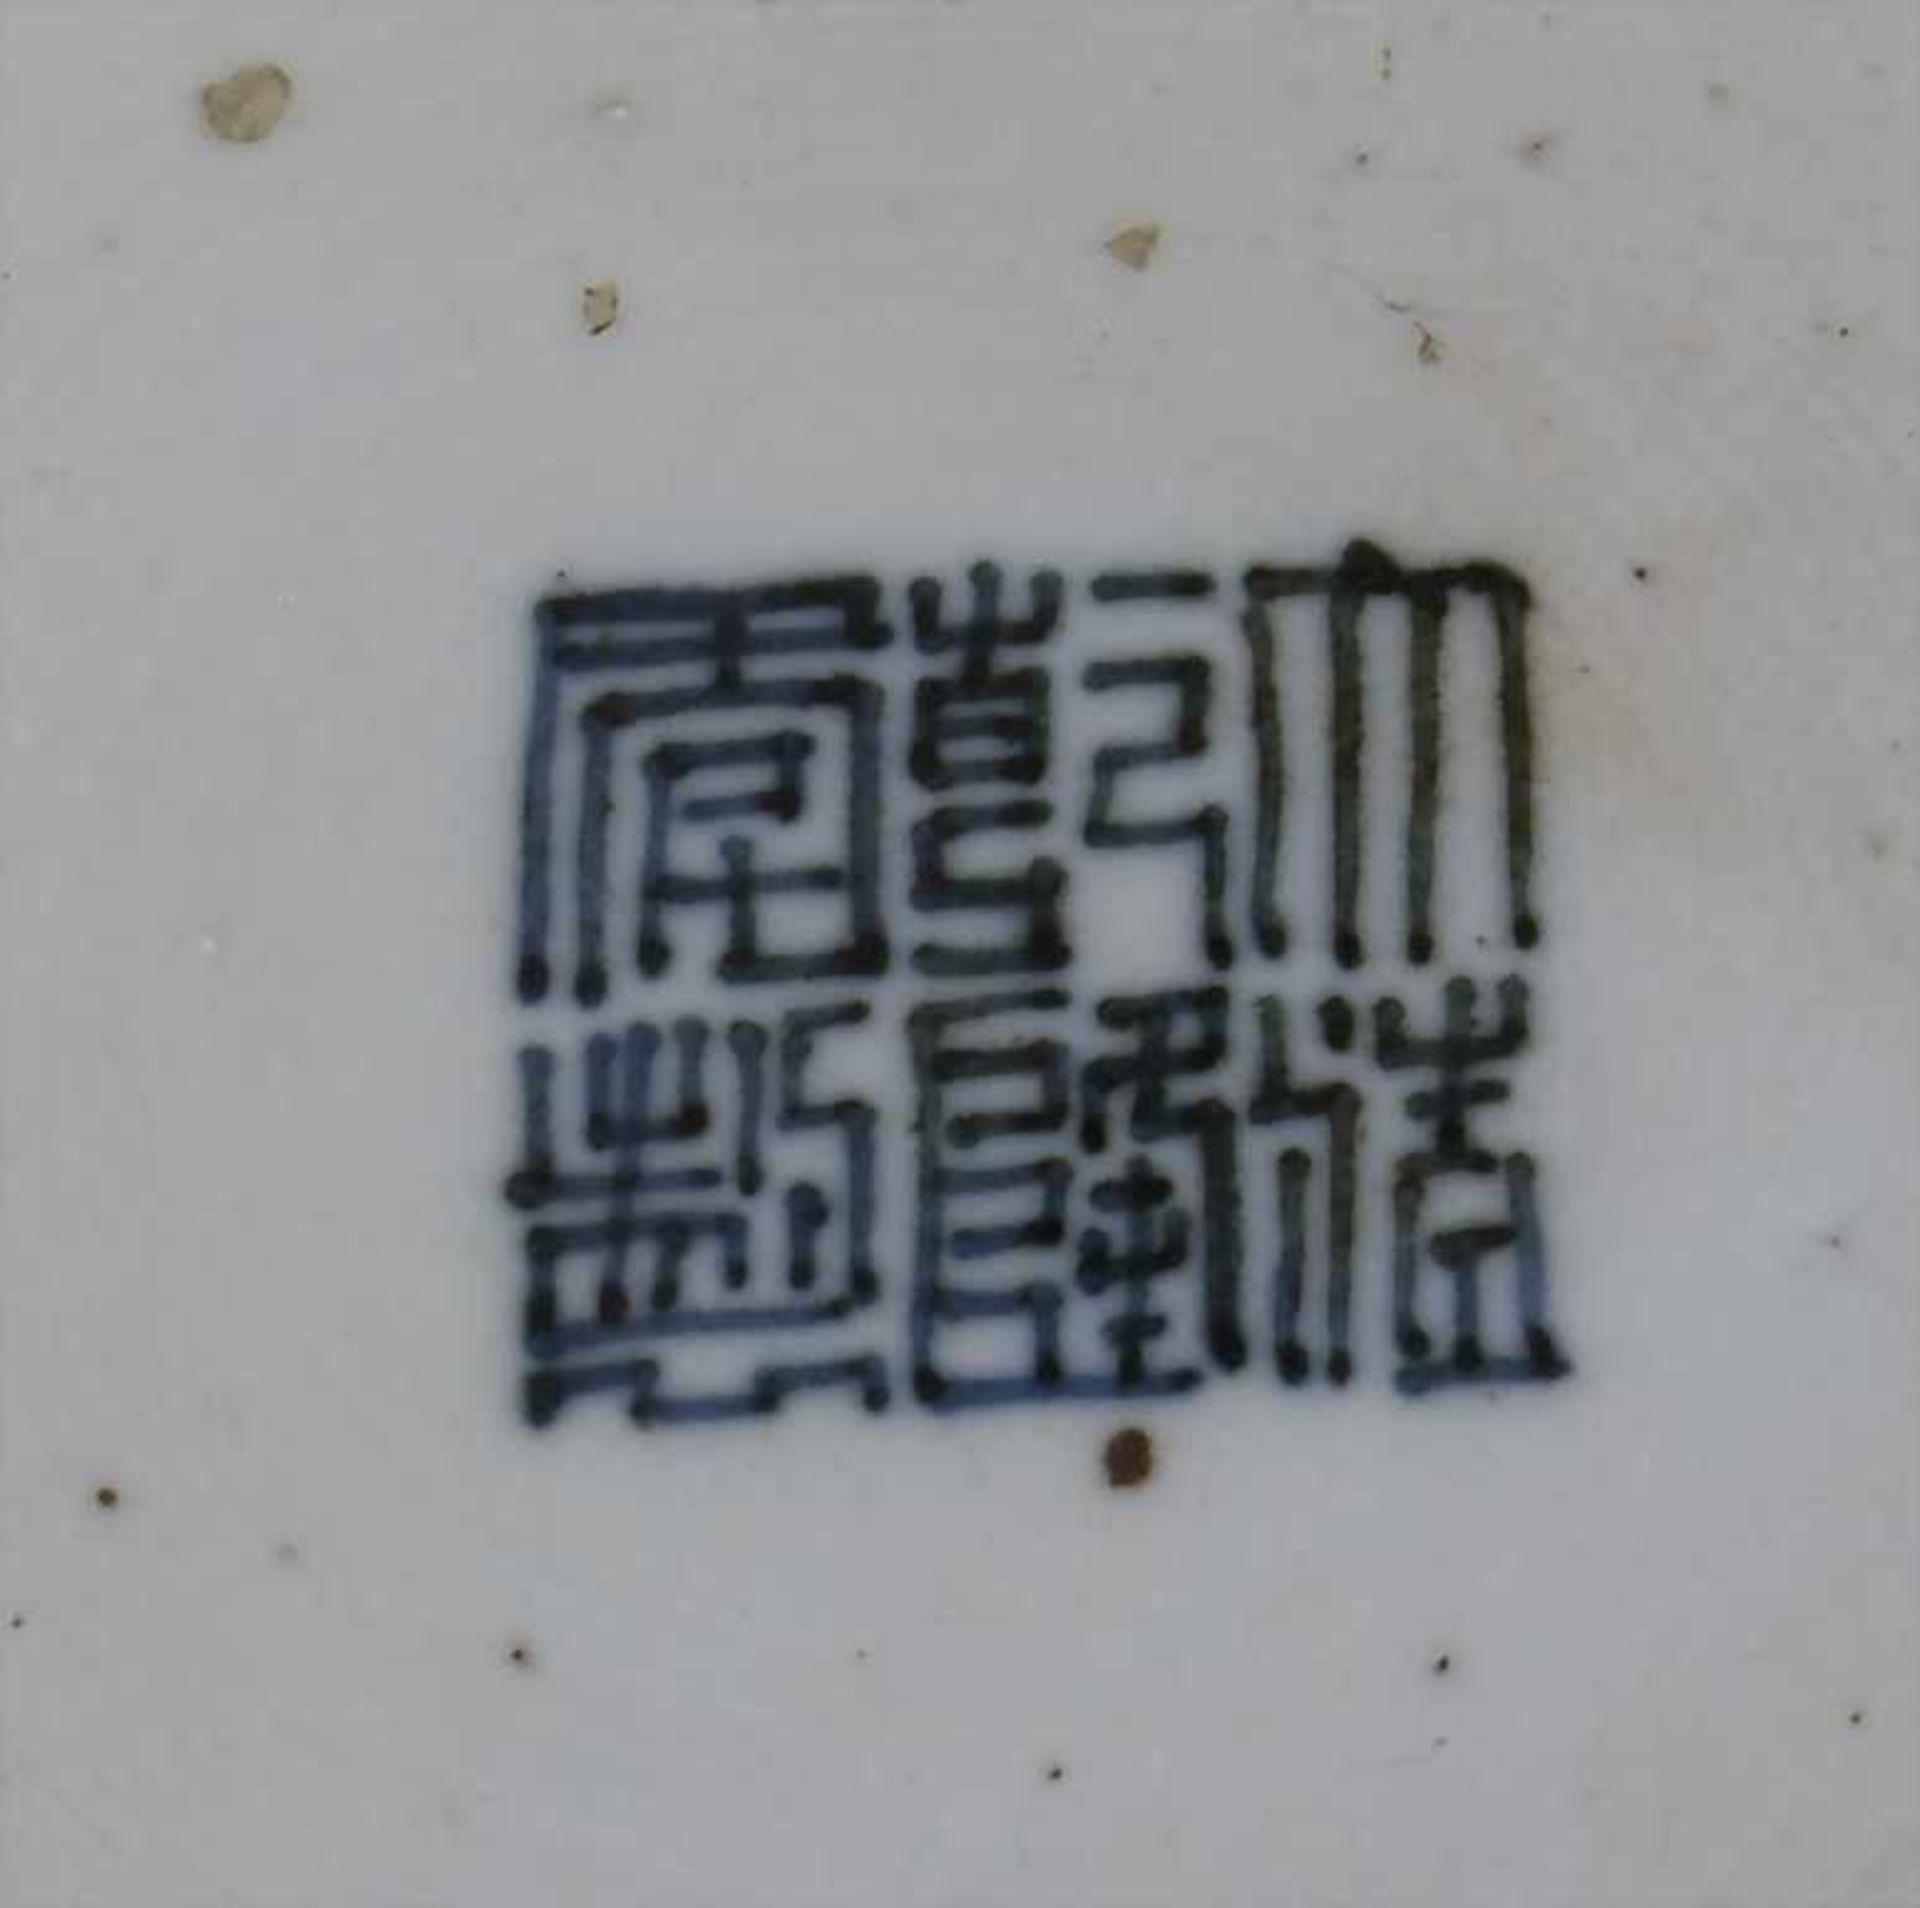 Puderblaue Porzellan-Vase / A powder blue porcelain vase, China, 18. Jh.Material: Porzellan, - Image 4 of 4